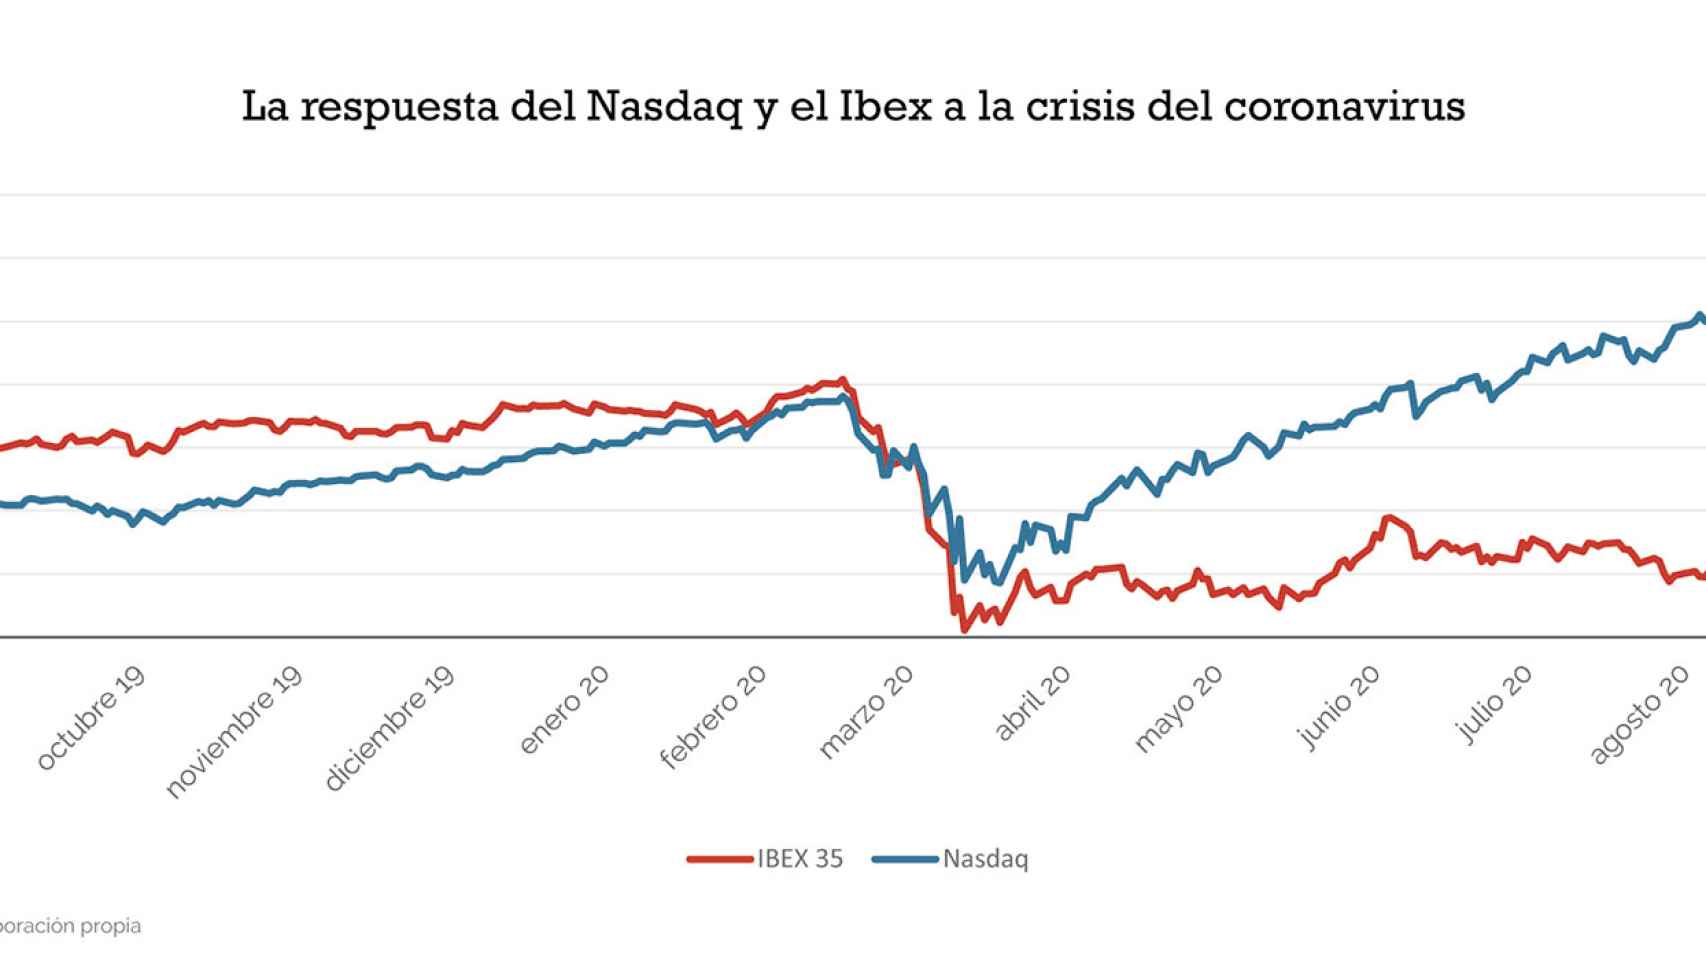 Gráfico con la evolución del Nasdaq y en Ibex35 el último año en el que se evidencia la diferente forma de responder tras la crisis de la Covid-19.